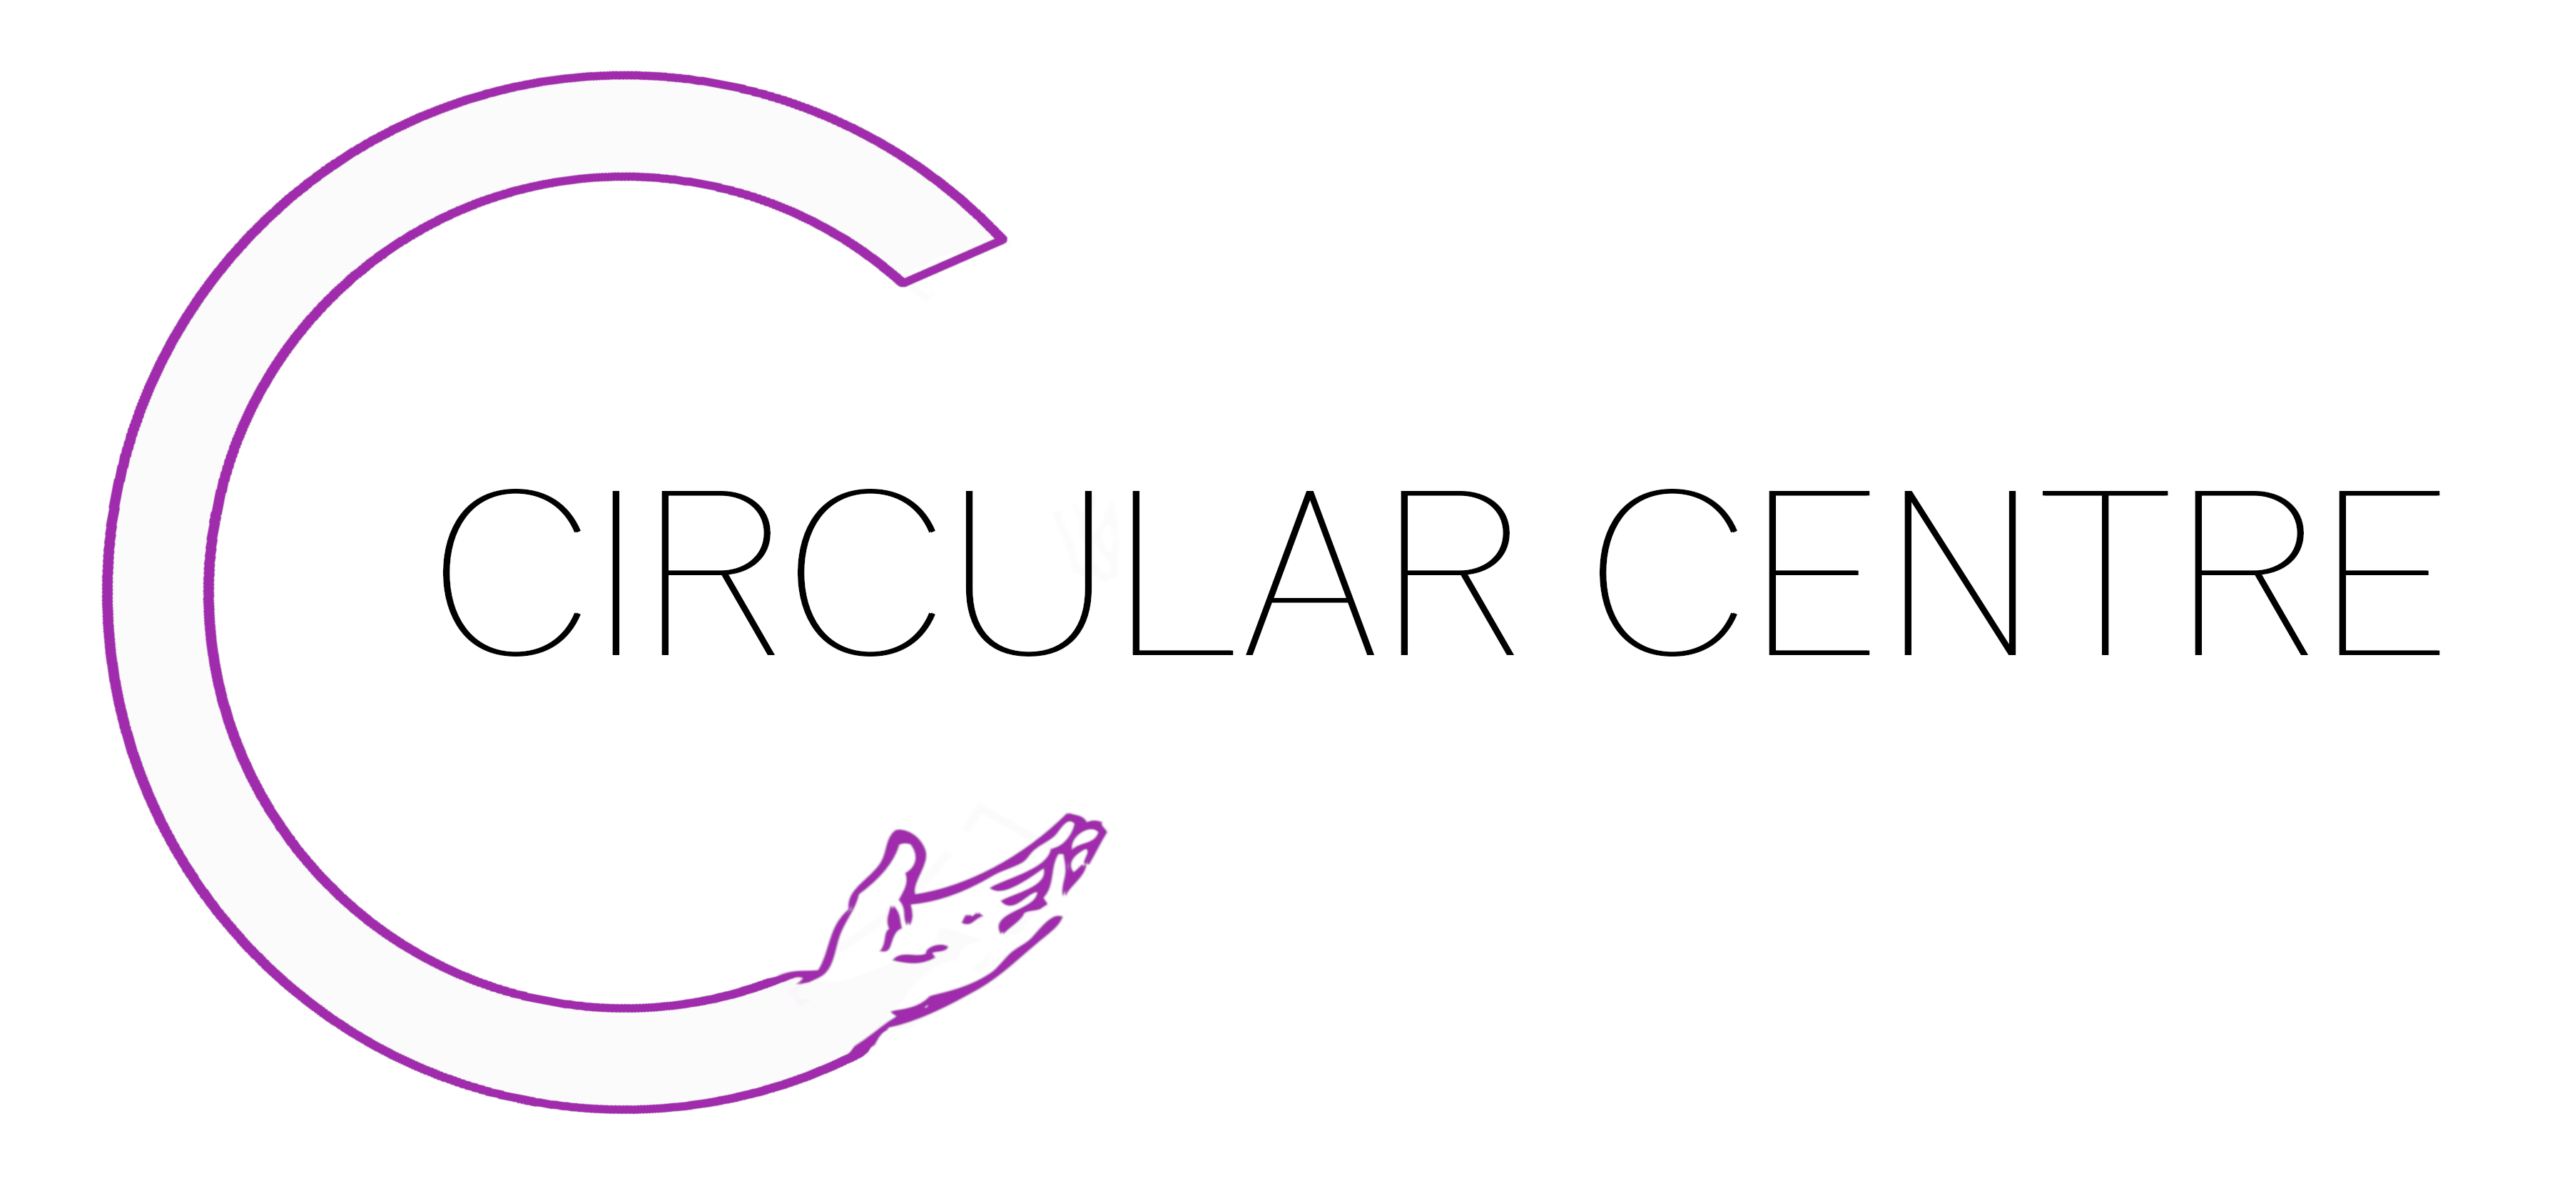 Circular Centre